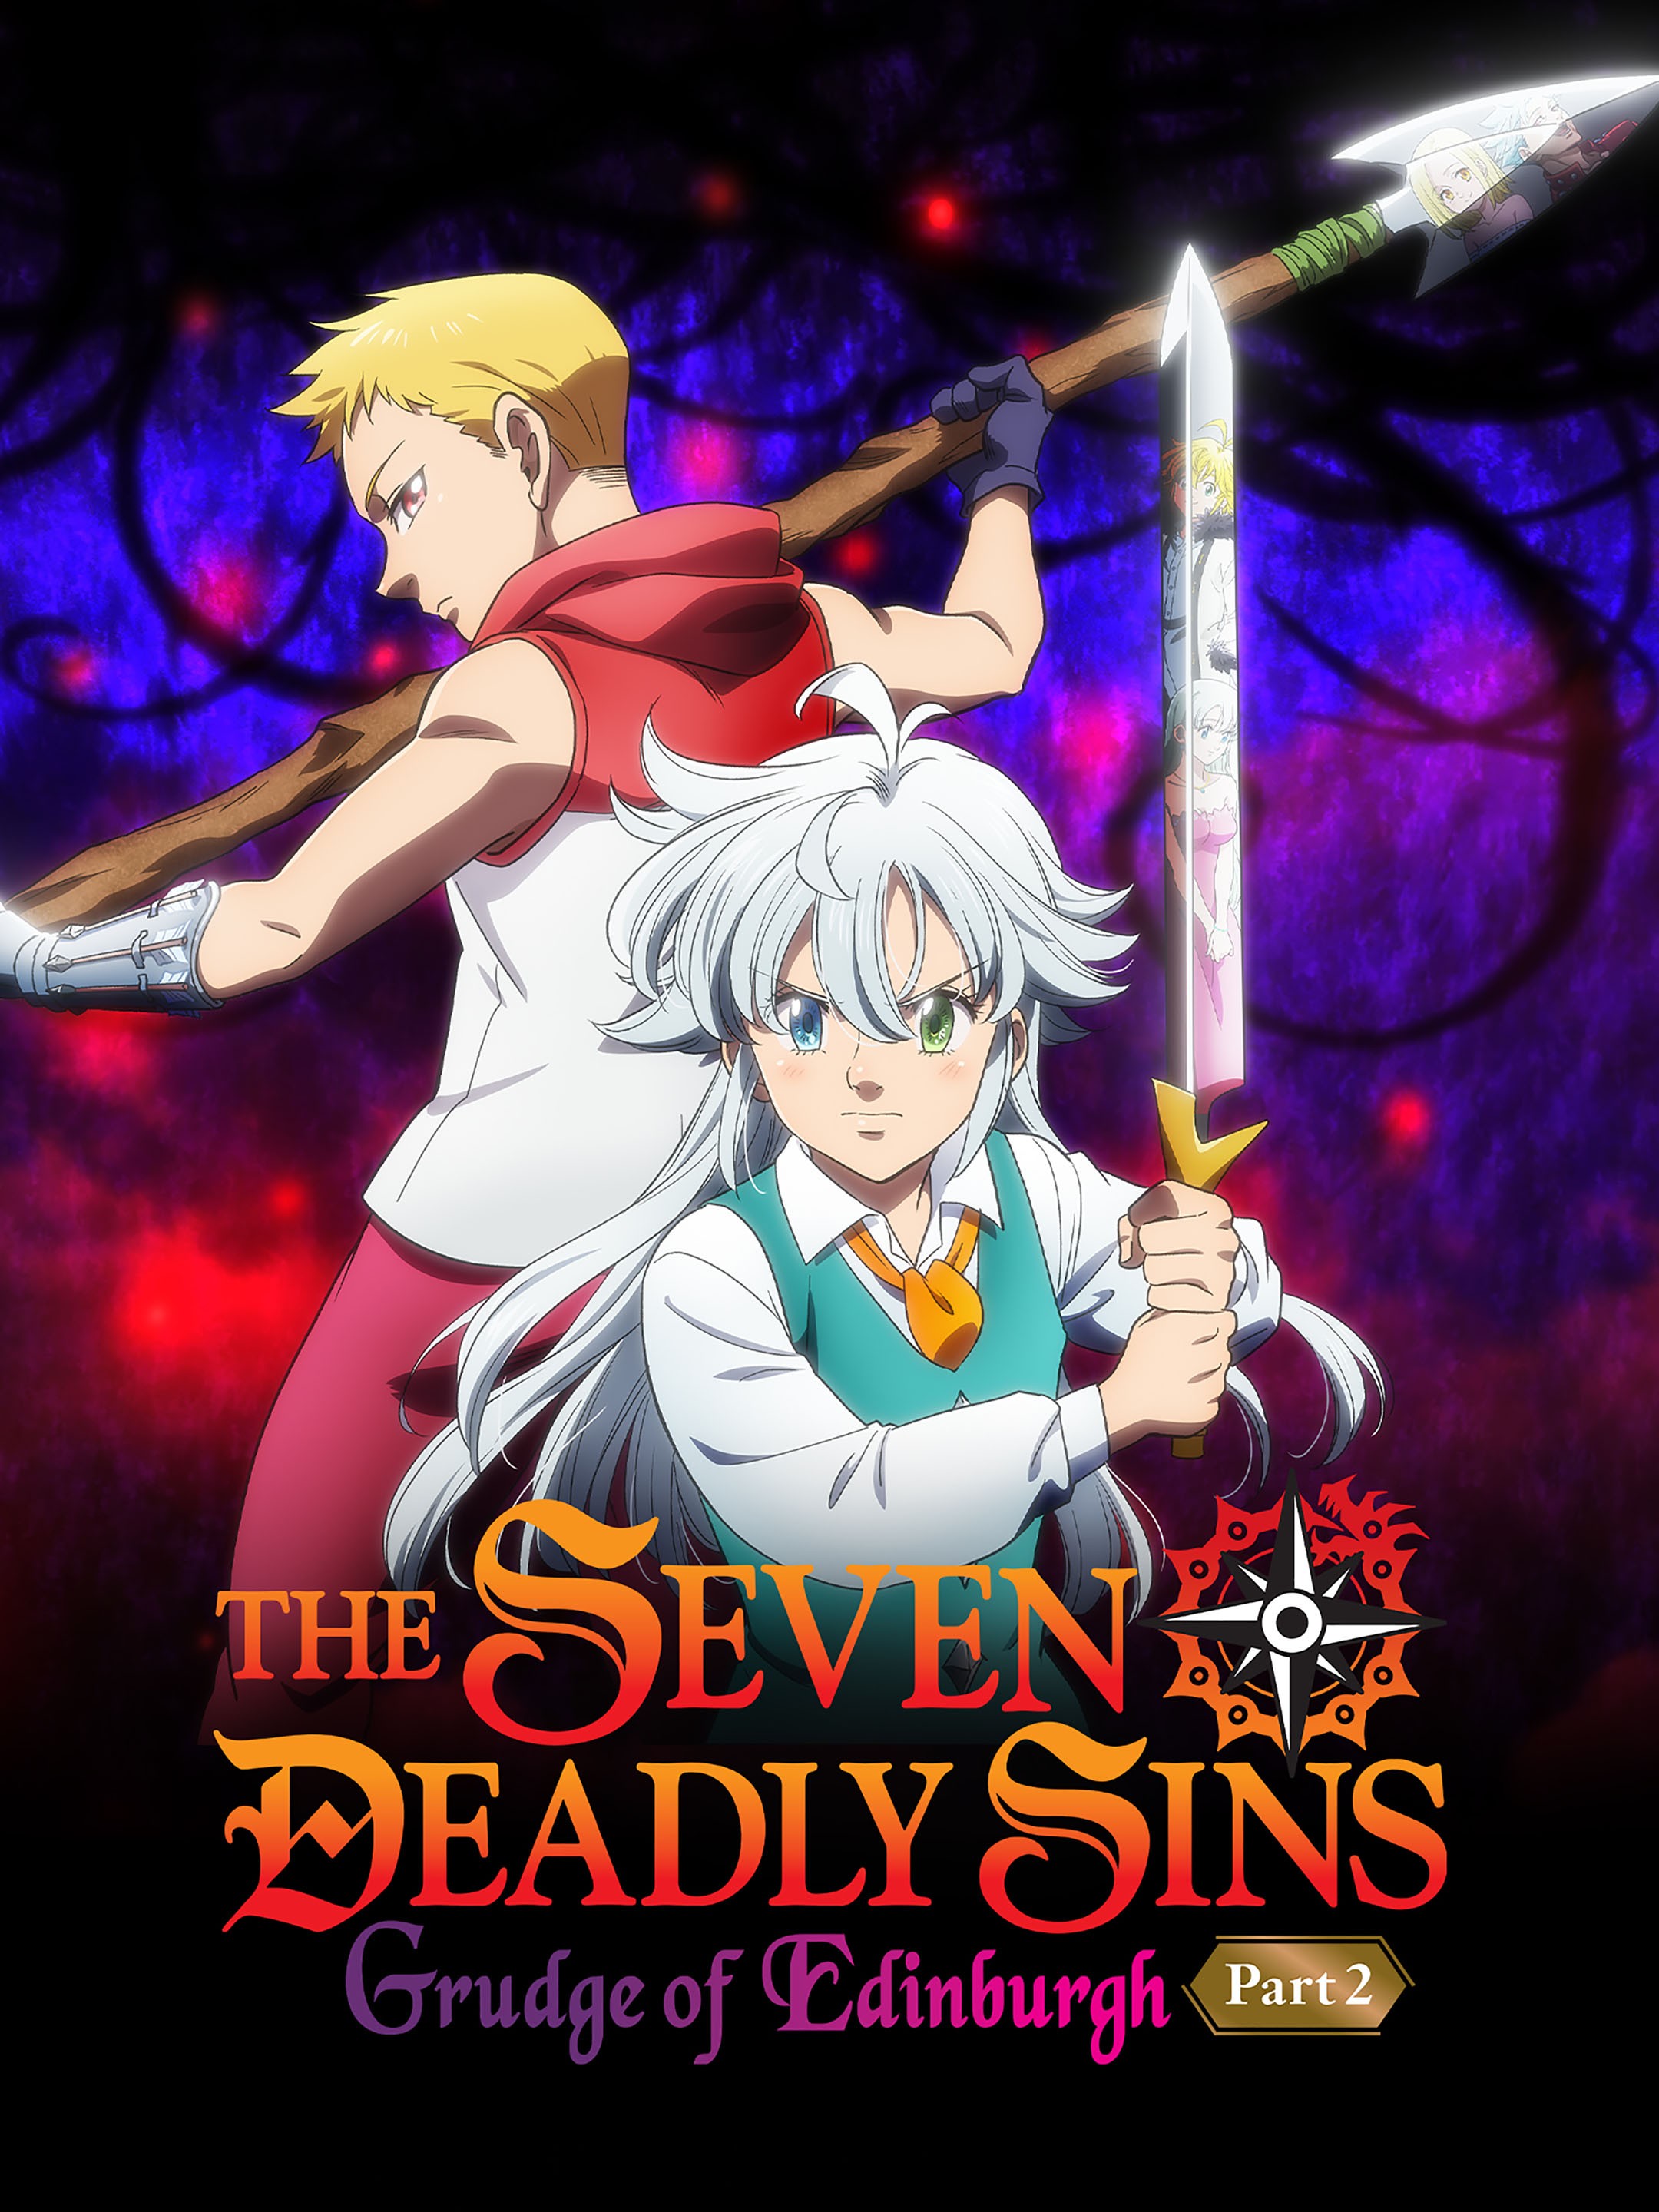 The Seven Deadly Sins: Última temporada ganha novo trailer e data